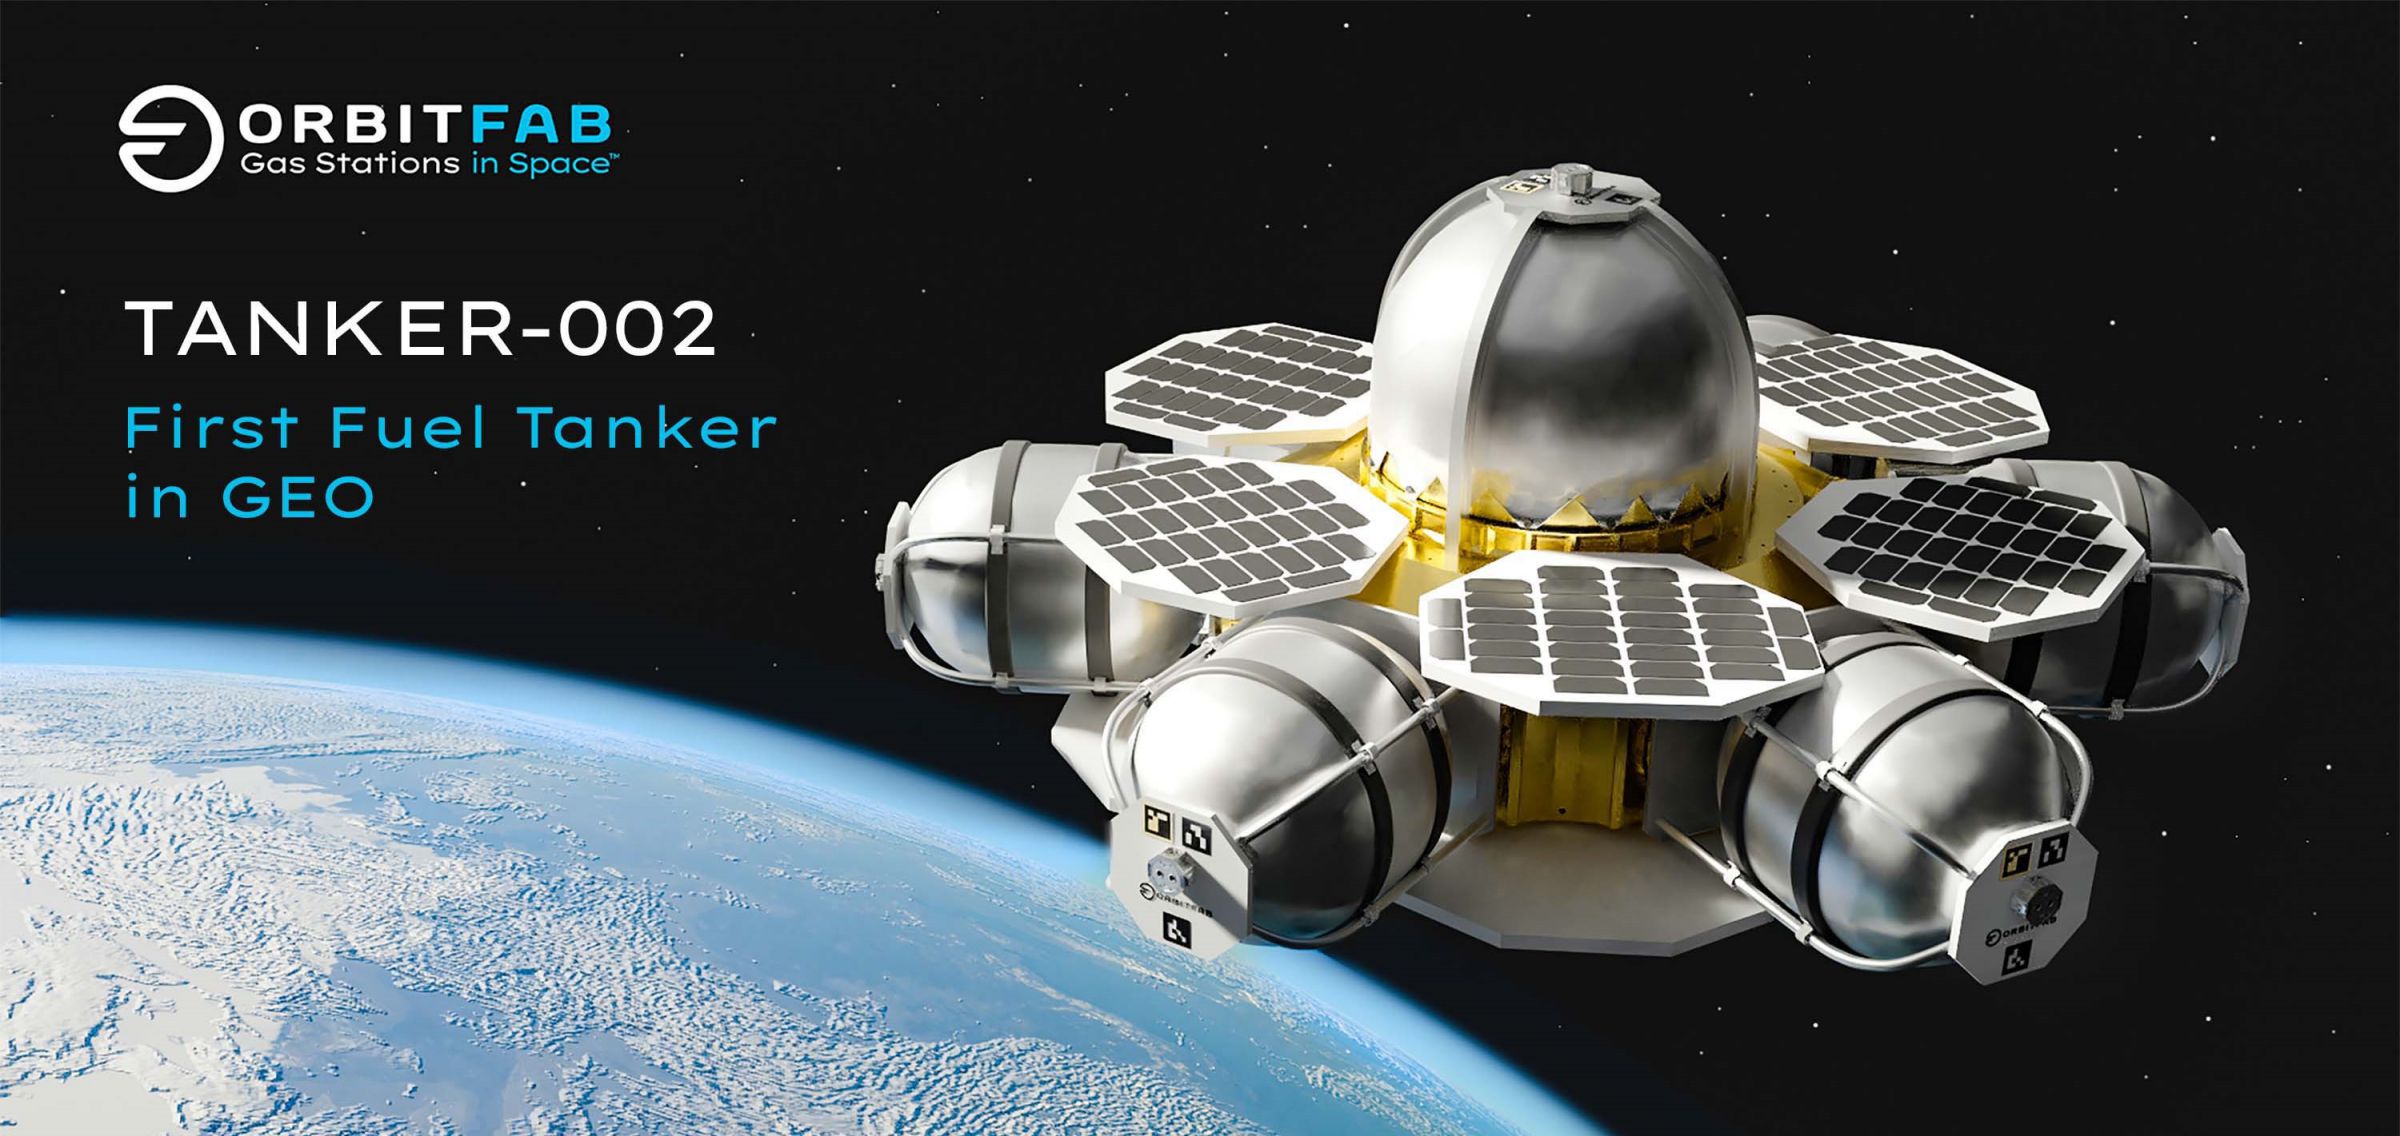 Tanker-002 (Spaceflight + OrbitFab) 1 crop